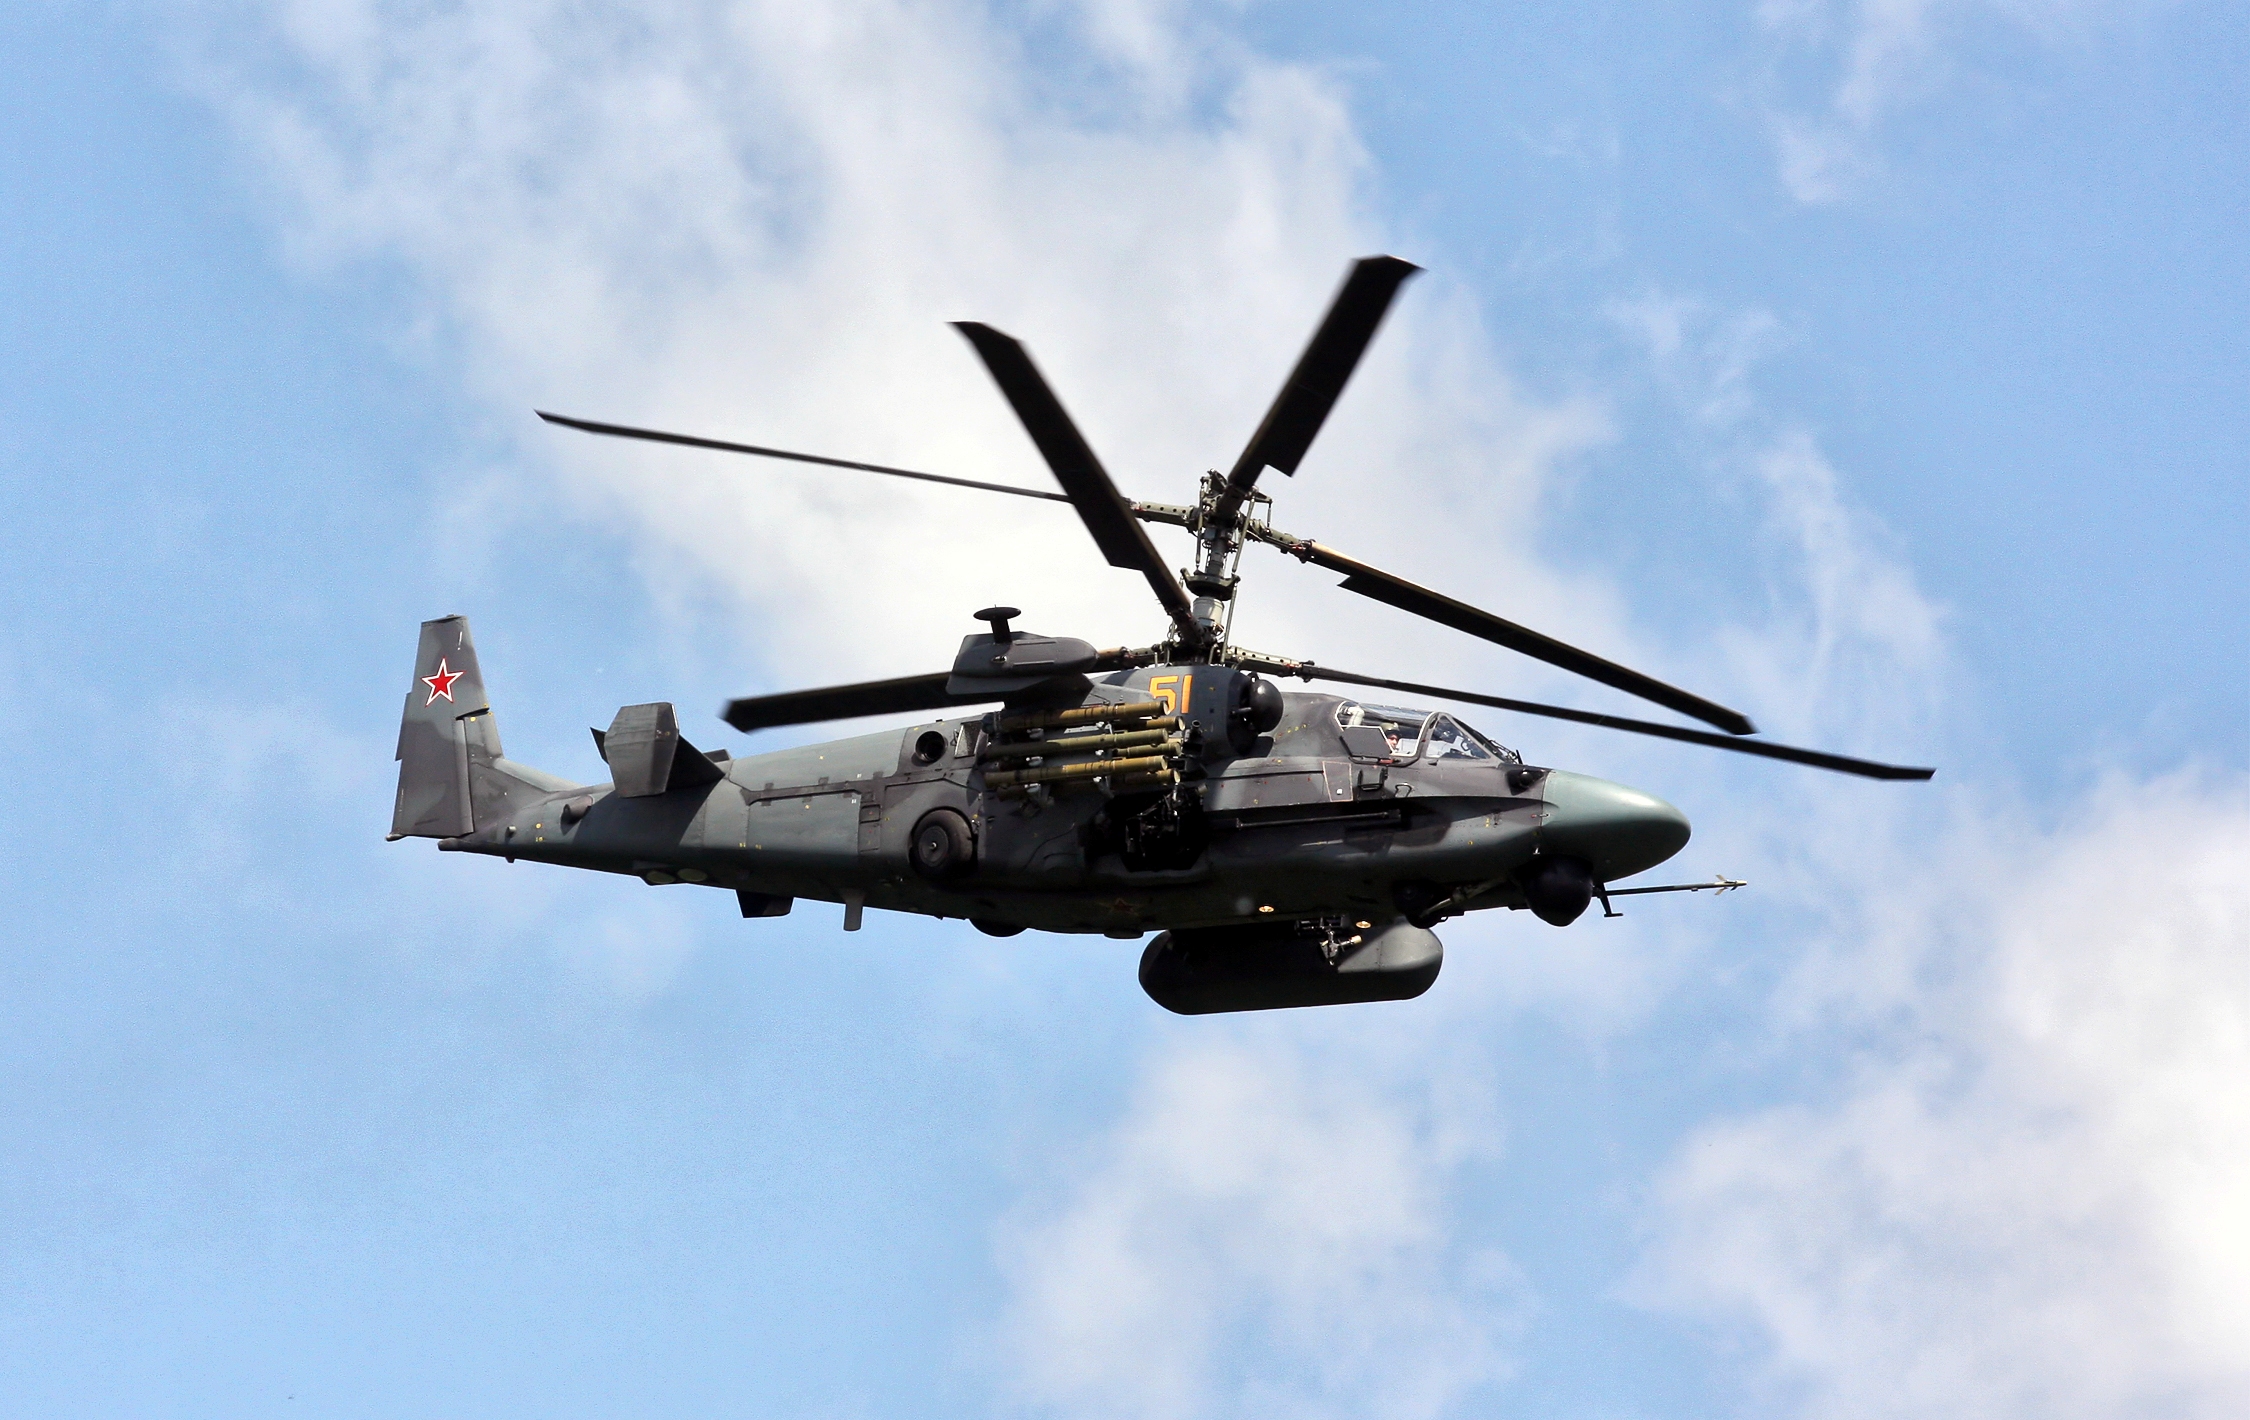 Ukrainska marinsoldater sköt ner en rysk Ka-52 Alligator attackhelikopter värd $16 000 000